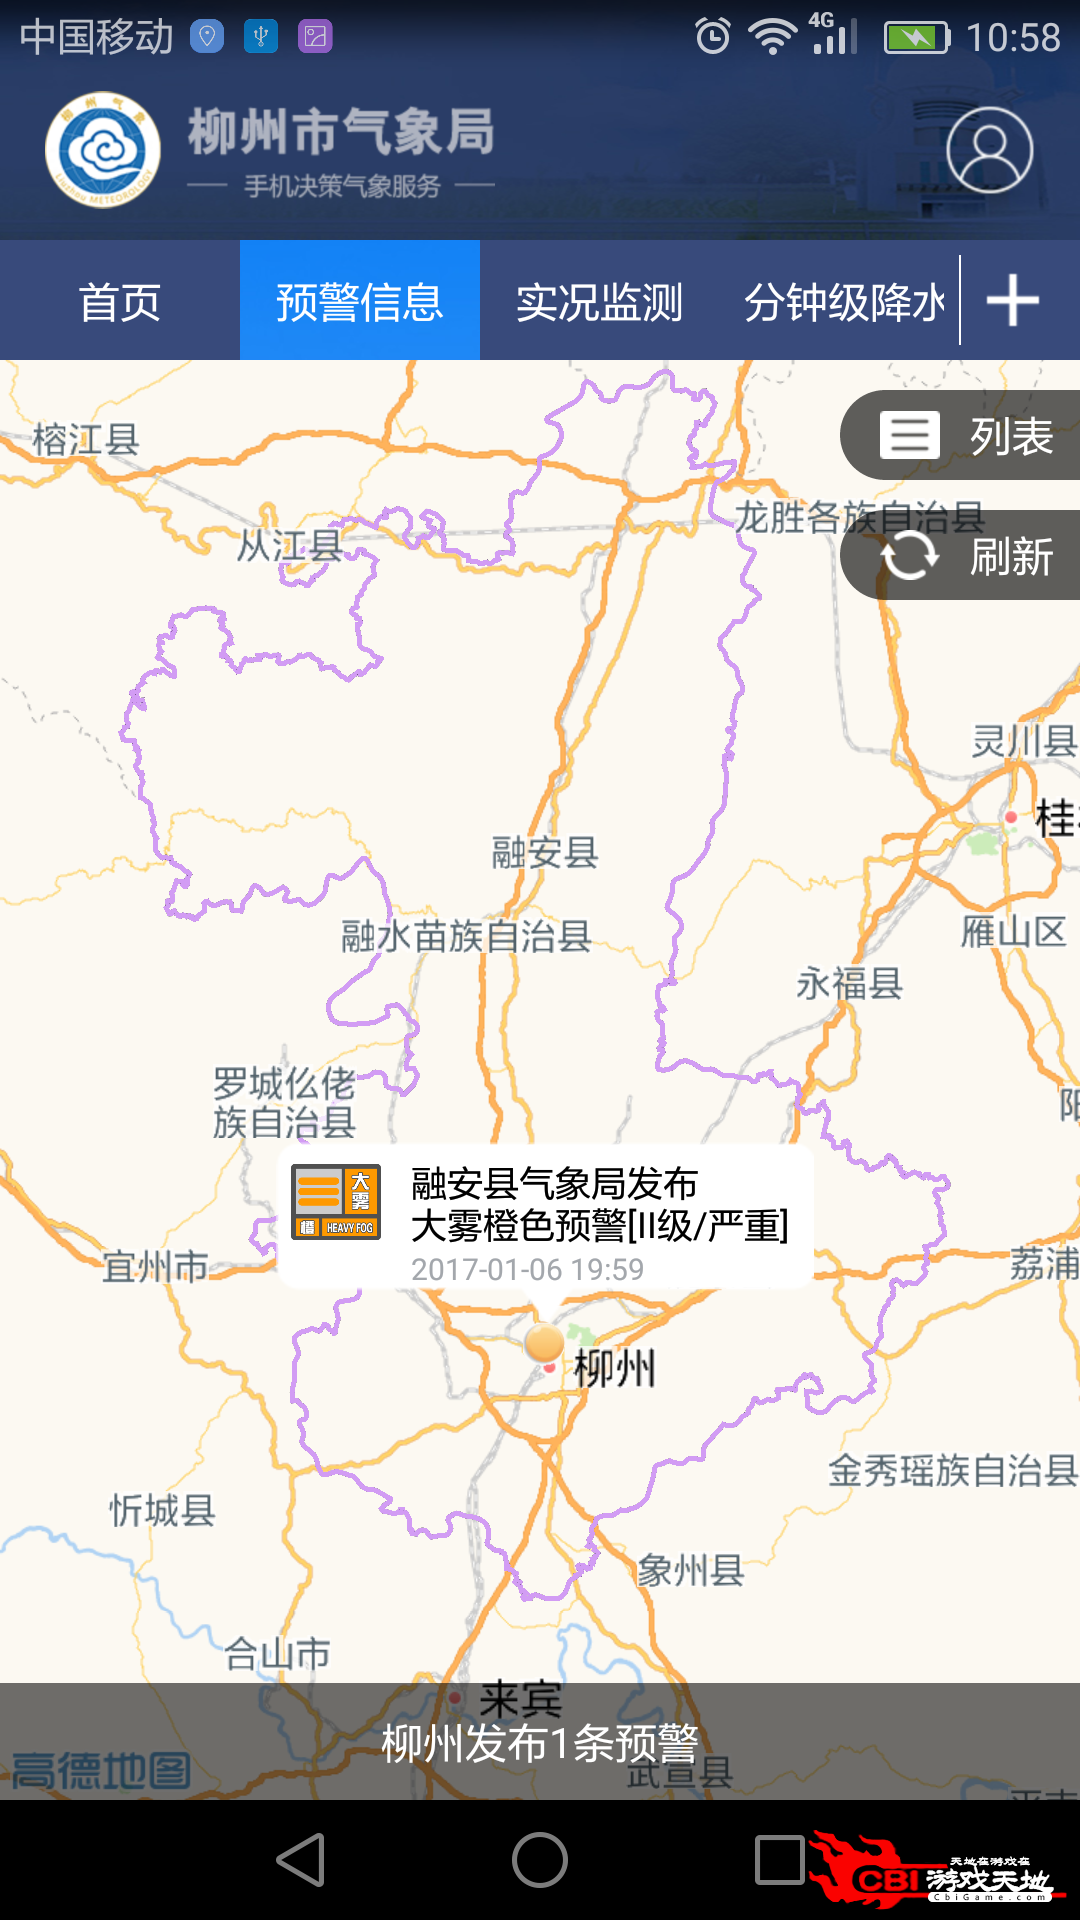 柳州气象气象雷达图1